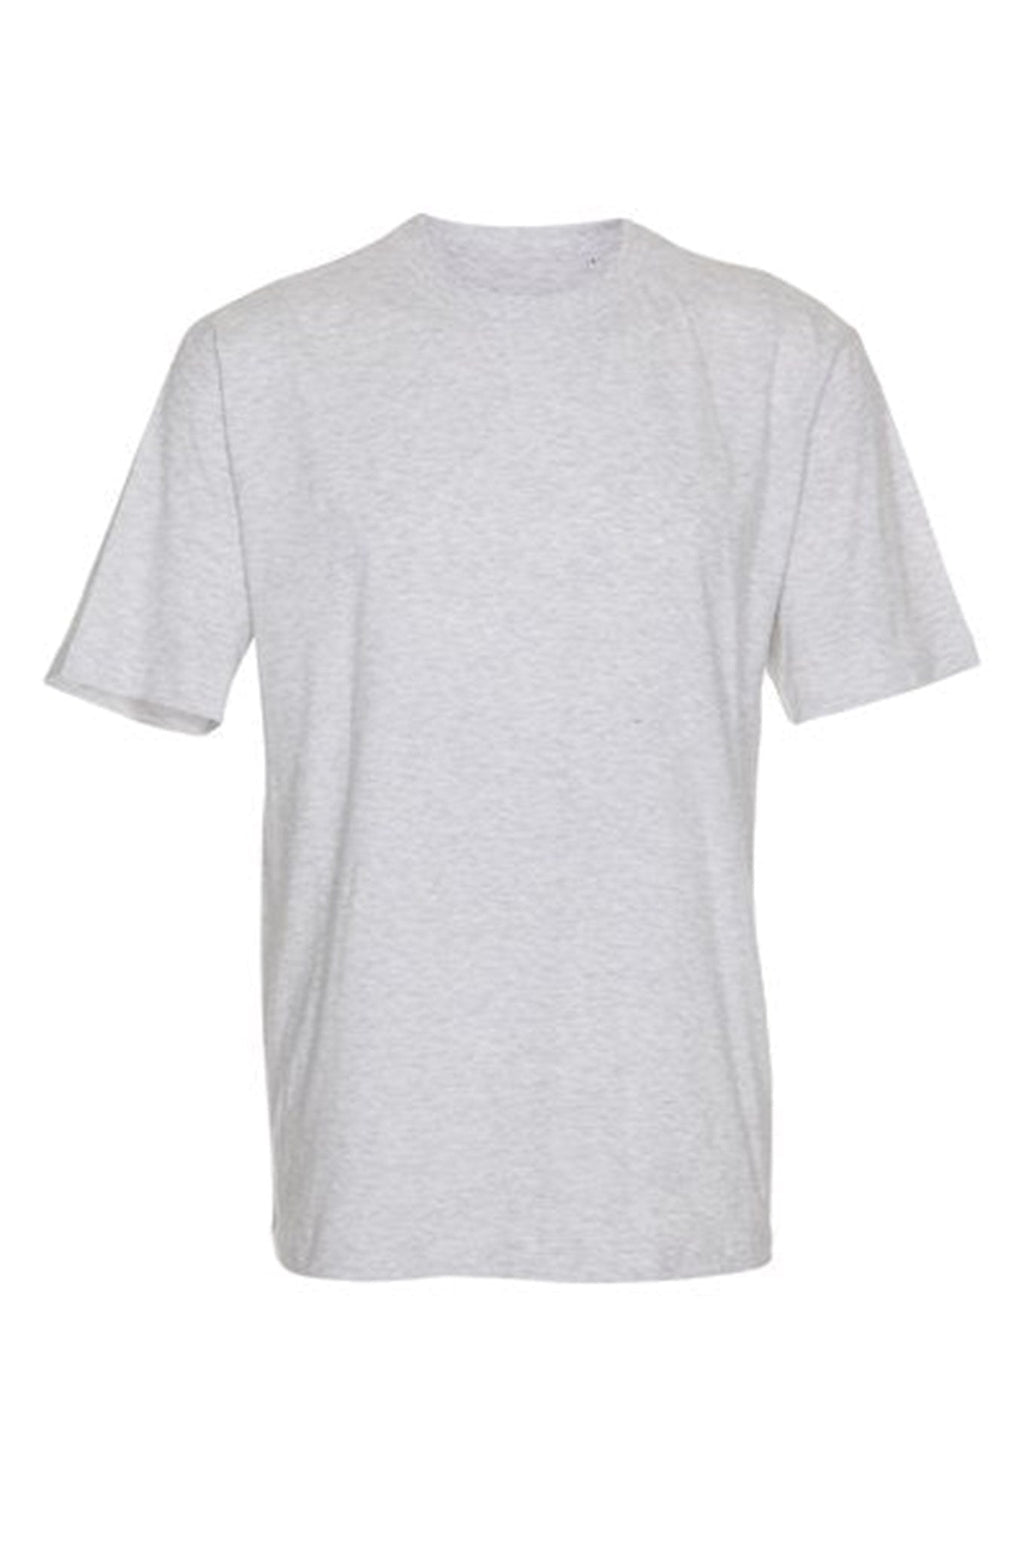 Nadrozmerné tričko - svetlo šedá